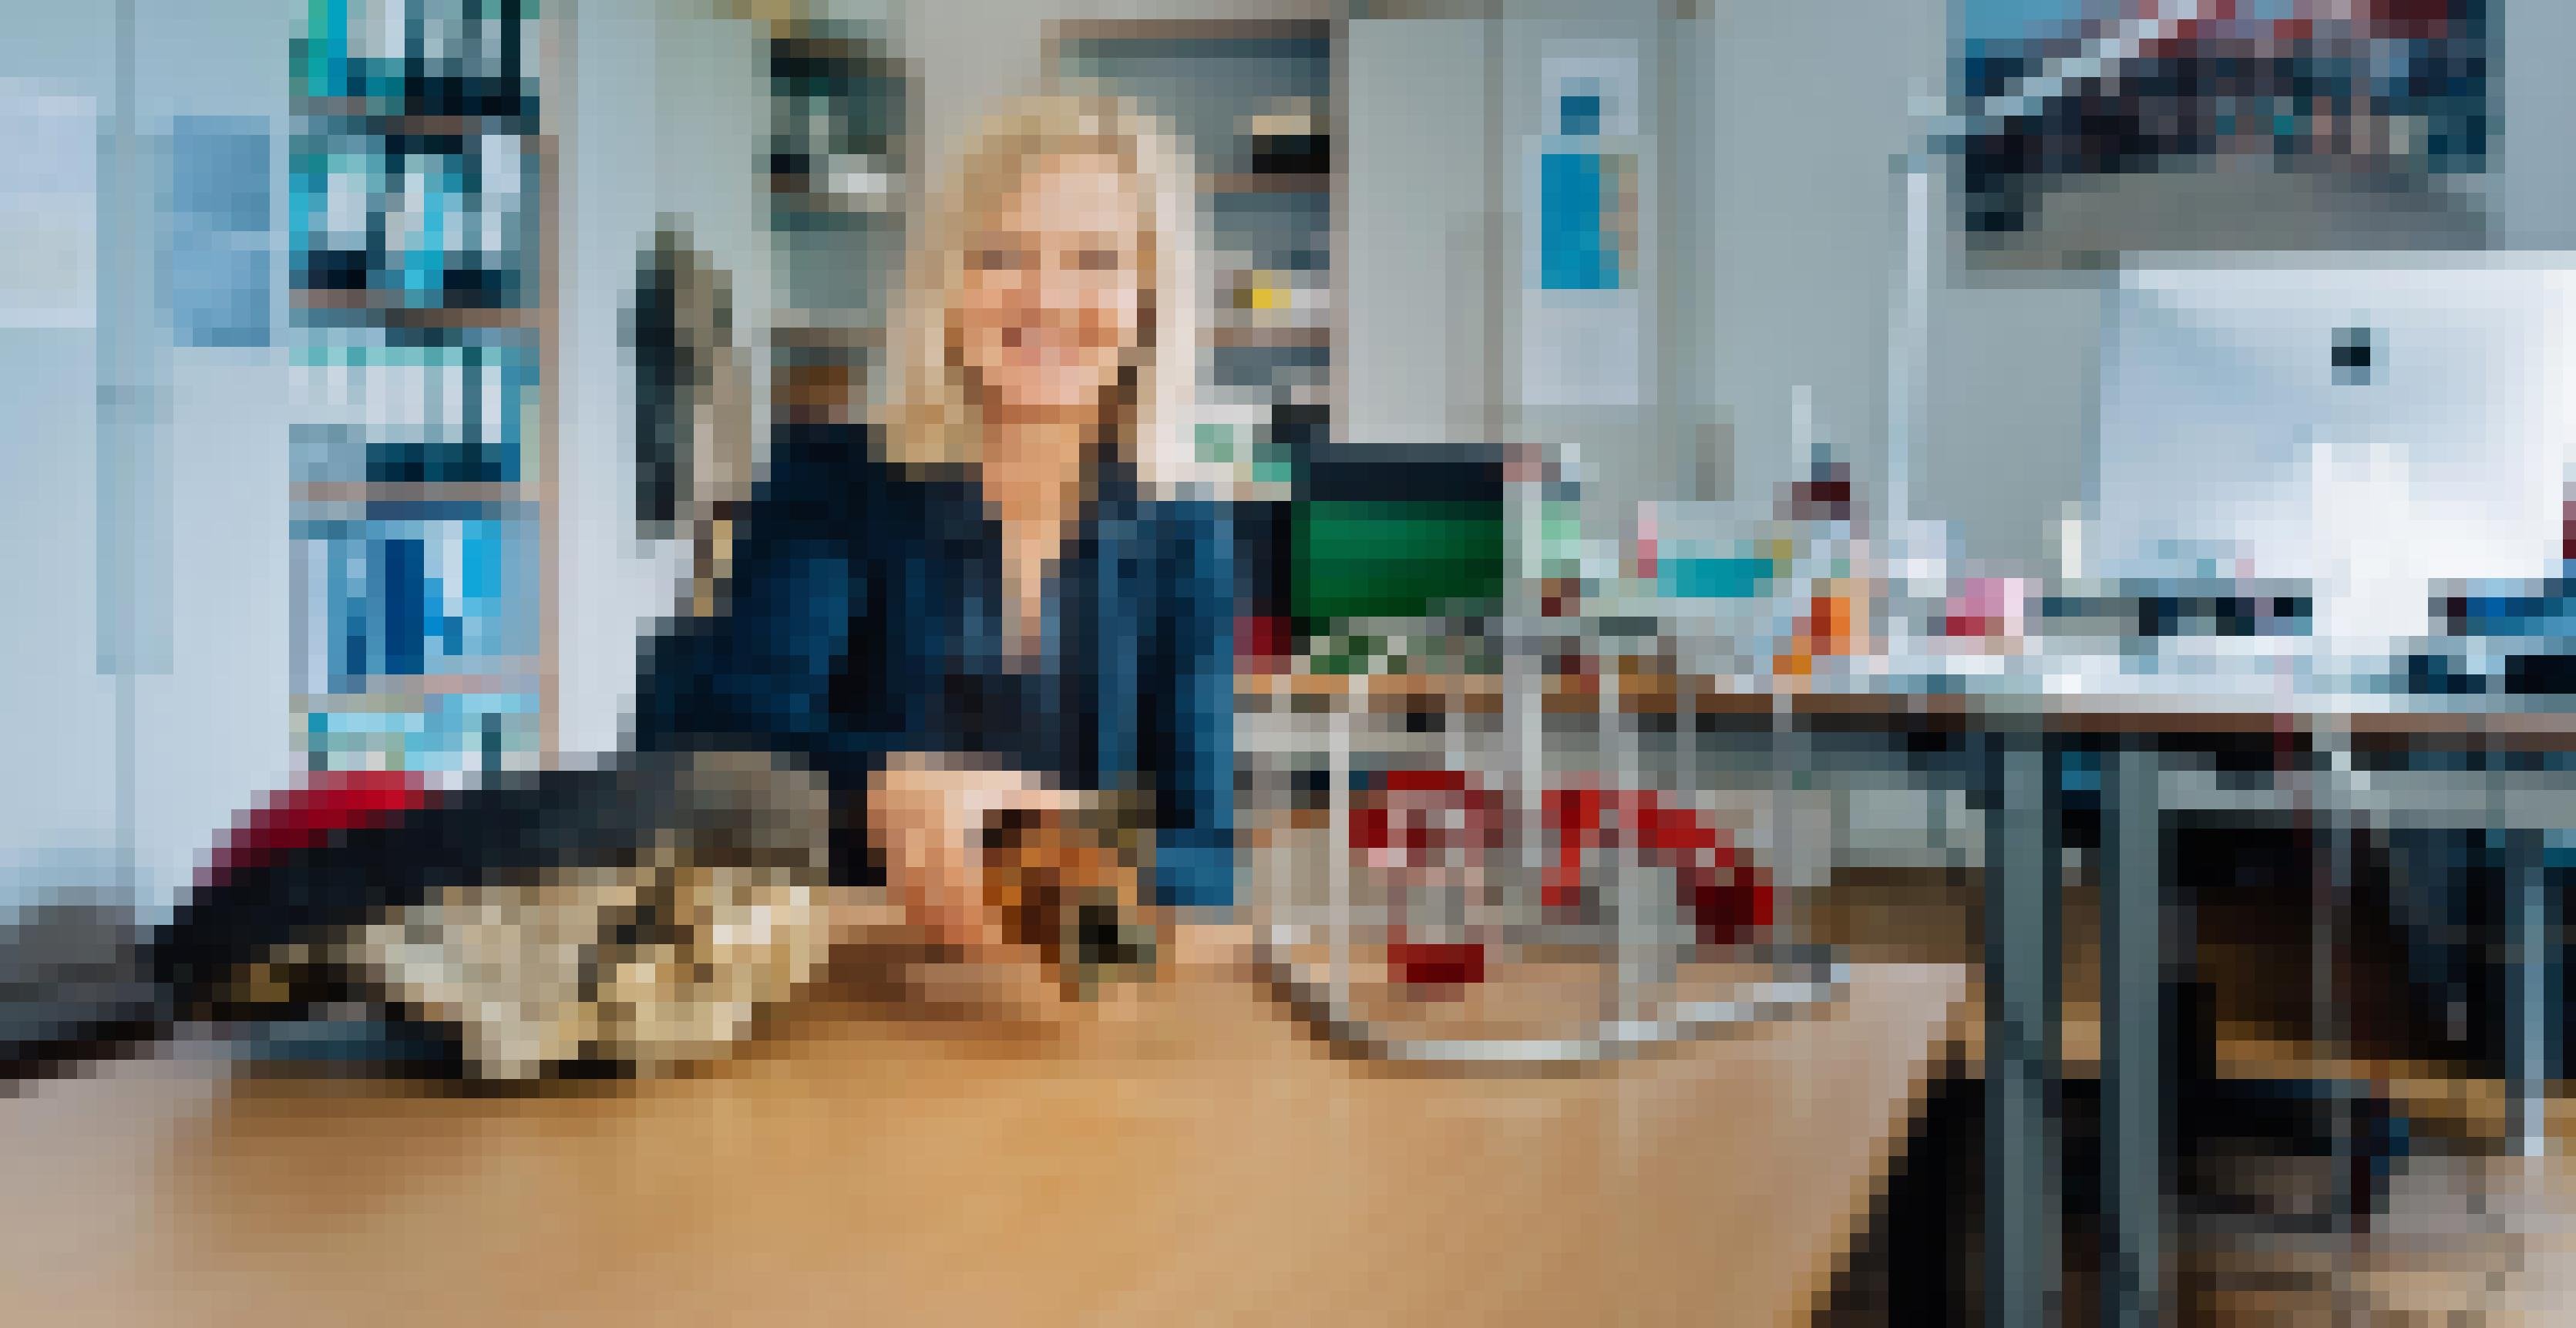 Eine Frau mit mittellangen blonden Haaren sitzt an einem Tisch in einem Büro und zeigte Modelle und Fundstücke aus der Meeresforschung.